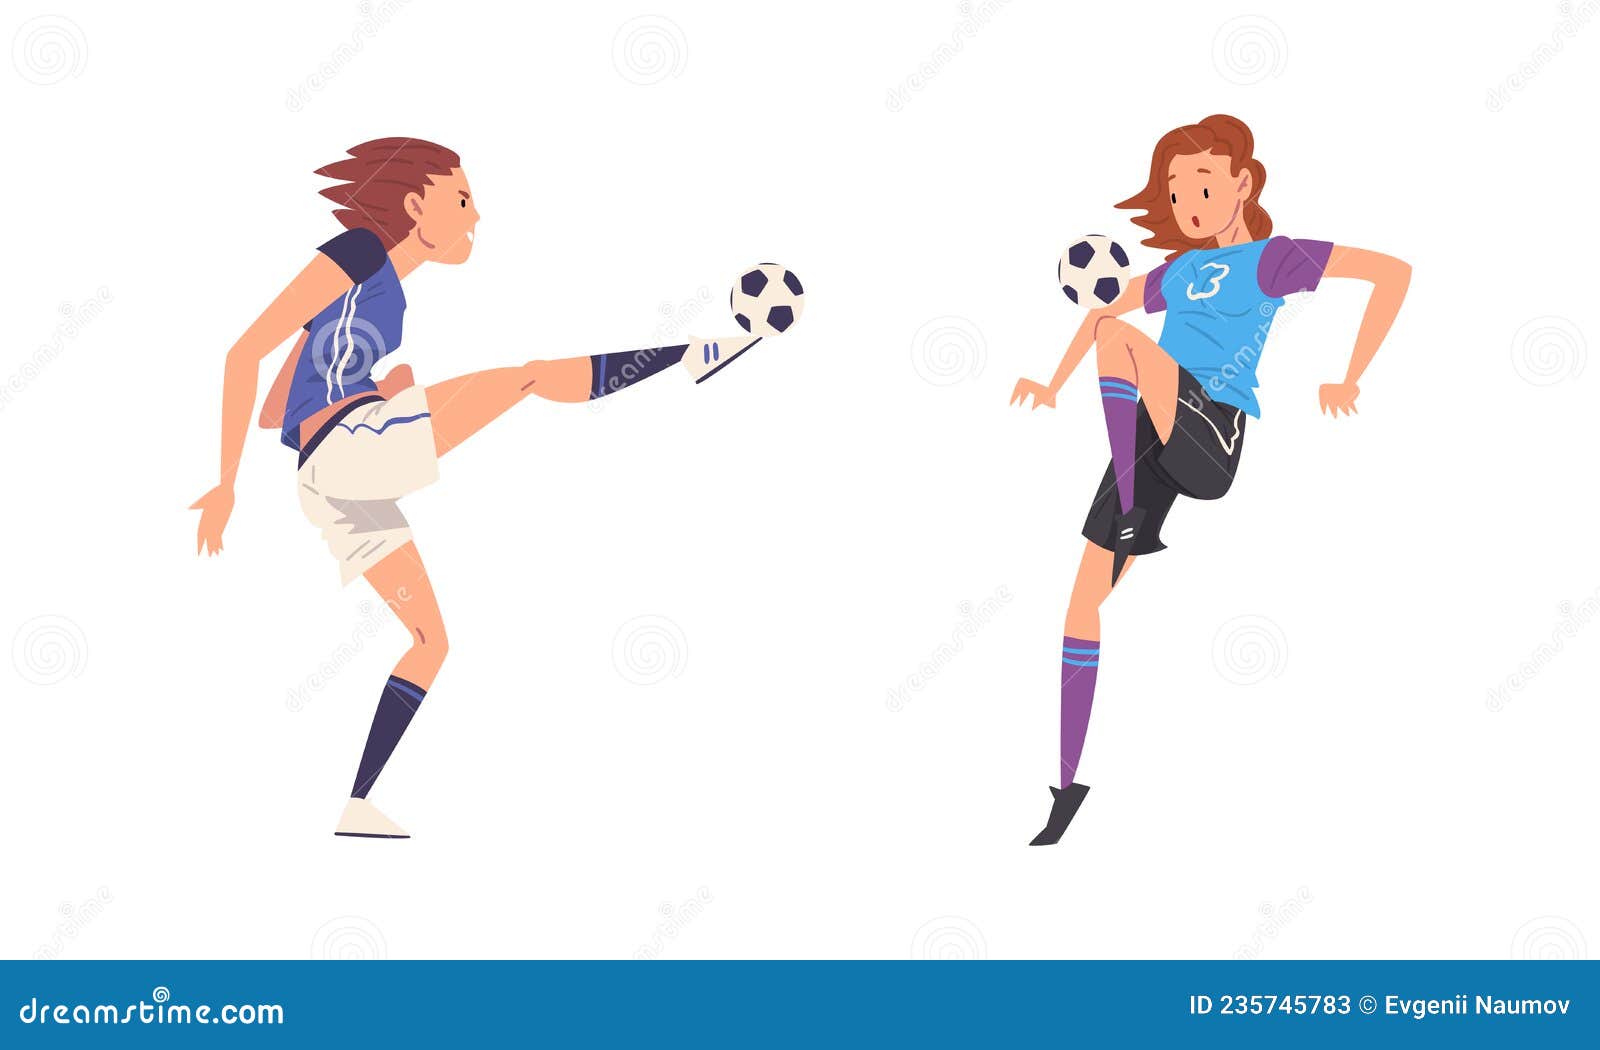 https://thumbs.dreamstime.com/z/juego-de-vectores-futbol-femenino-con-patadas-y-pases-concepto-equipo-joven-din%C3%A1mico-235745783.jpg